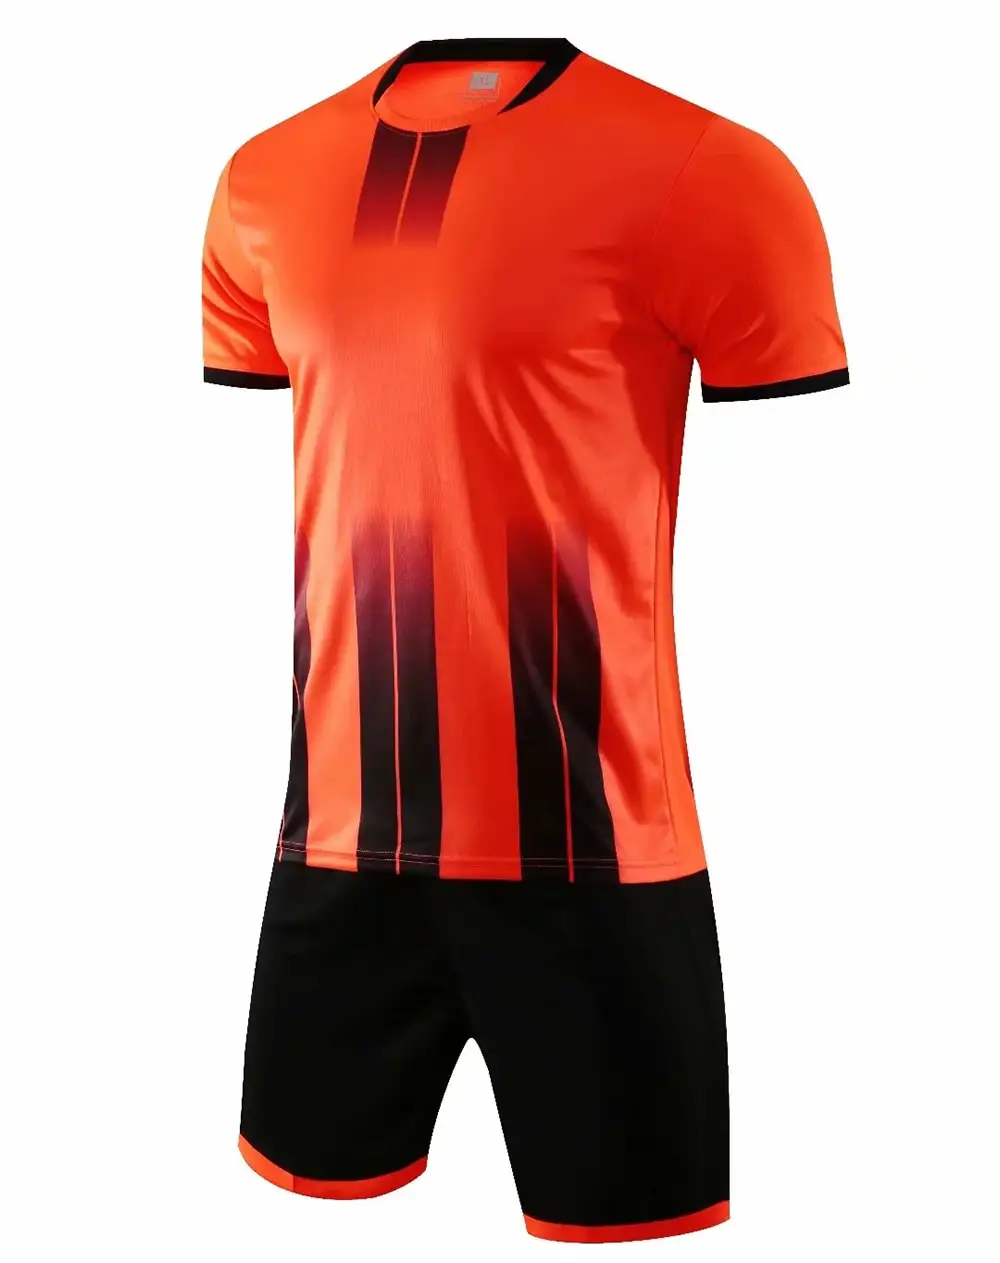 Turuncu siyah kısa kollu futbol futbol forması gömlek ve şort yüksek kalite spor forması takım fabrika üreticisi